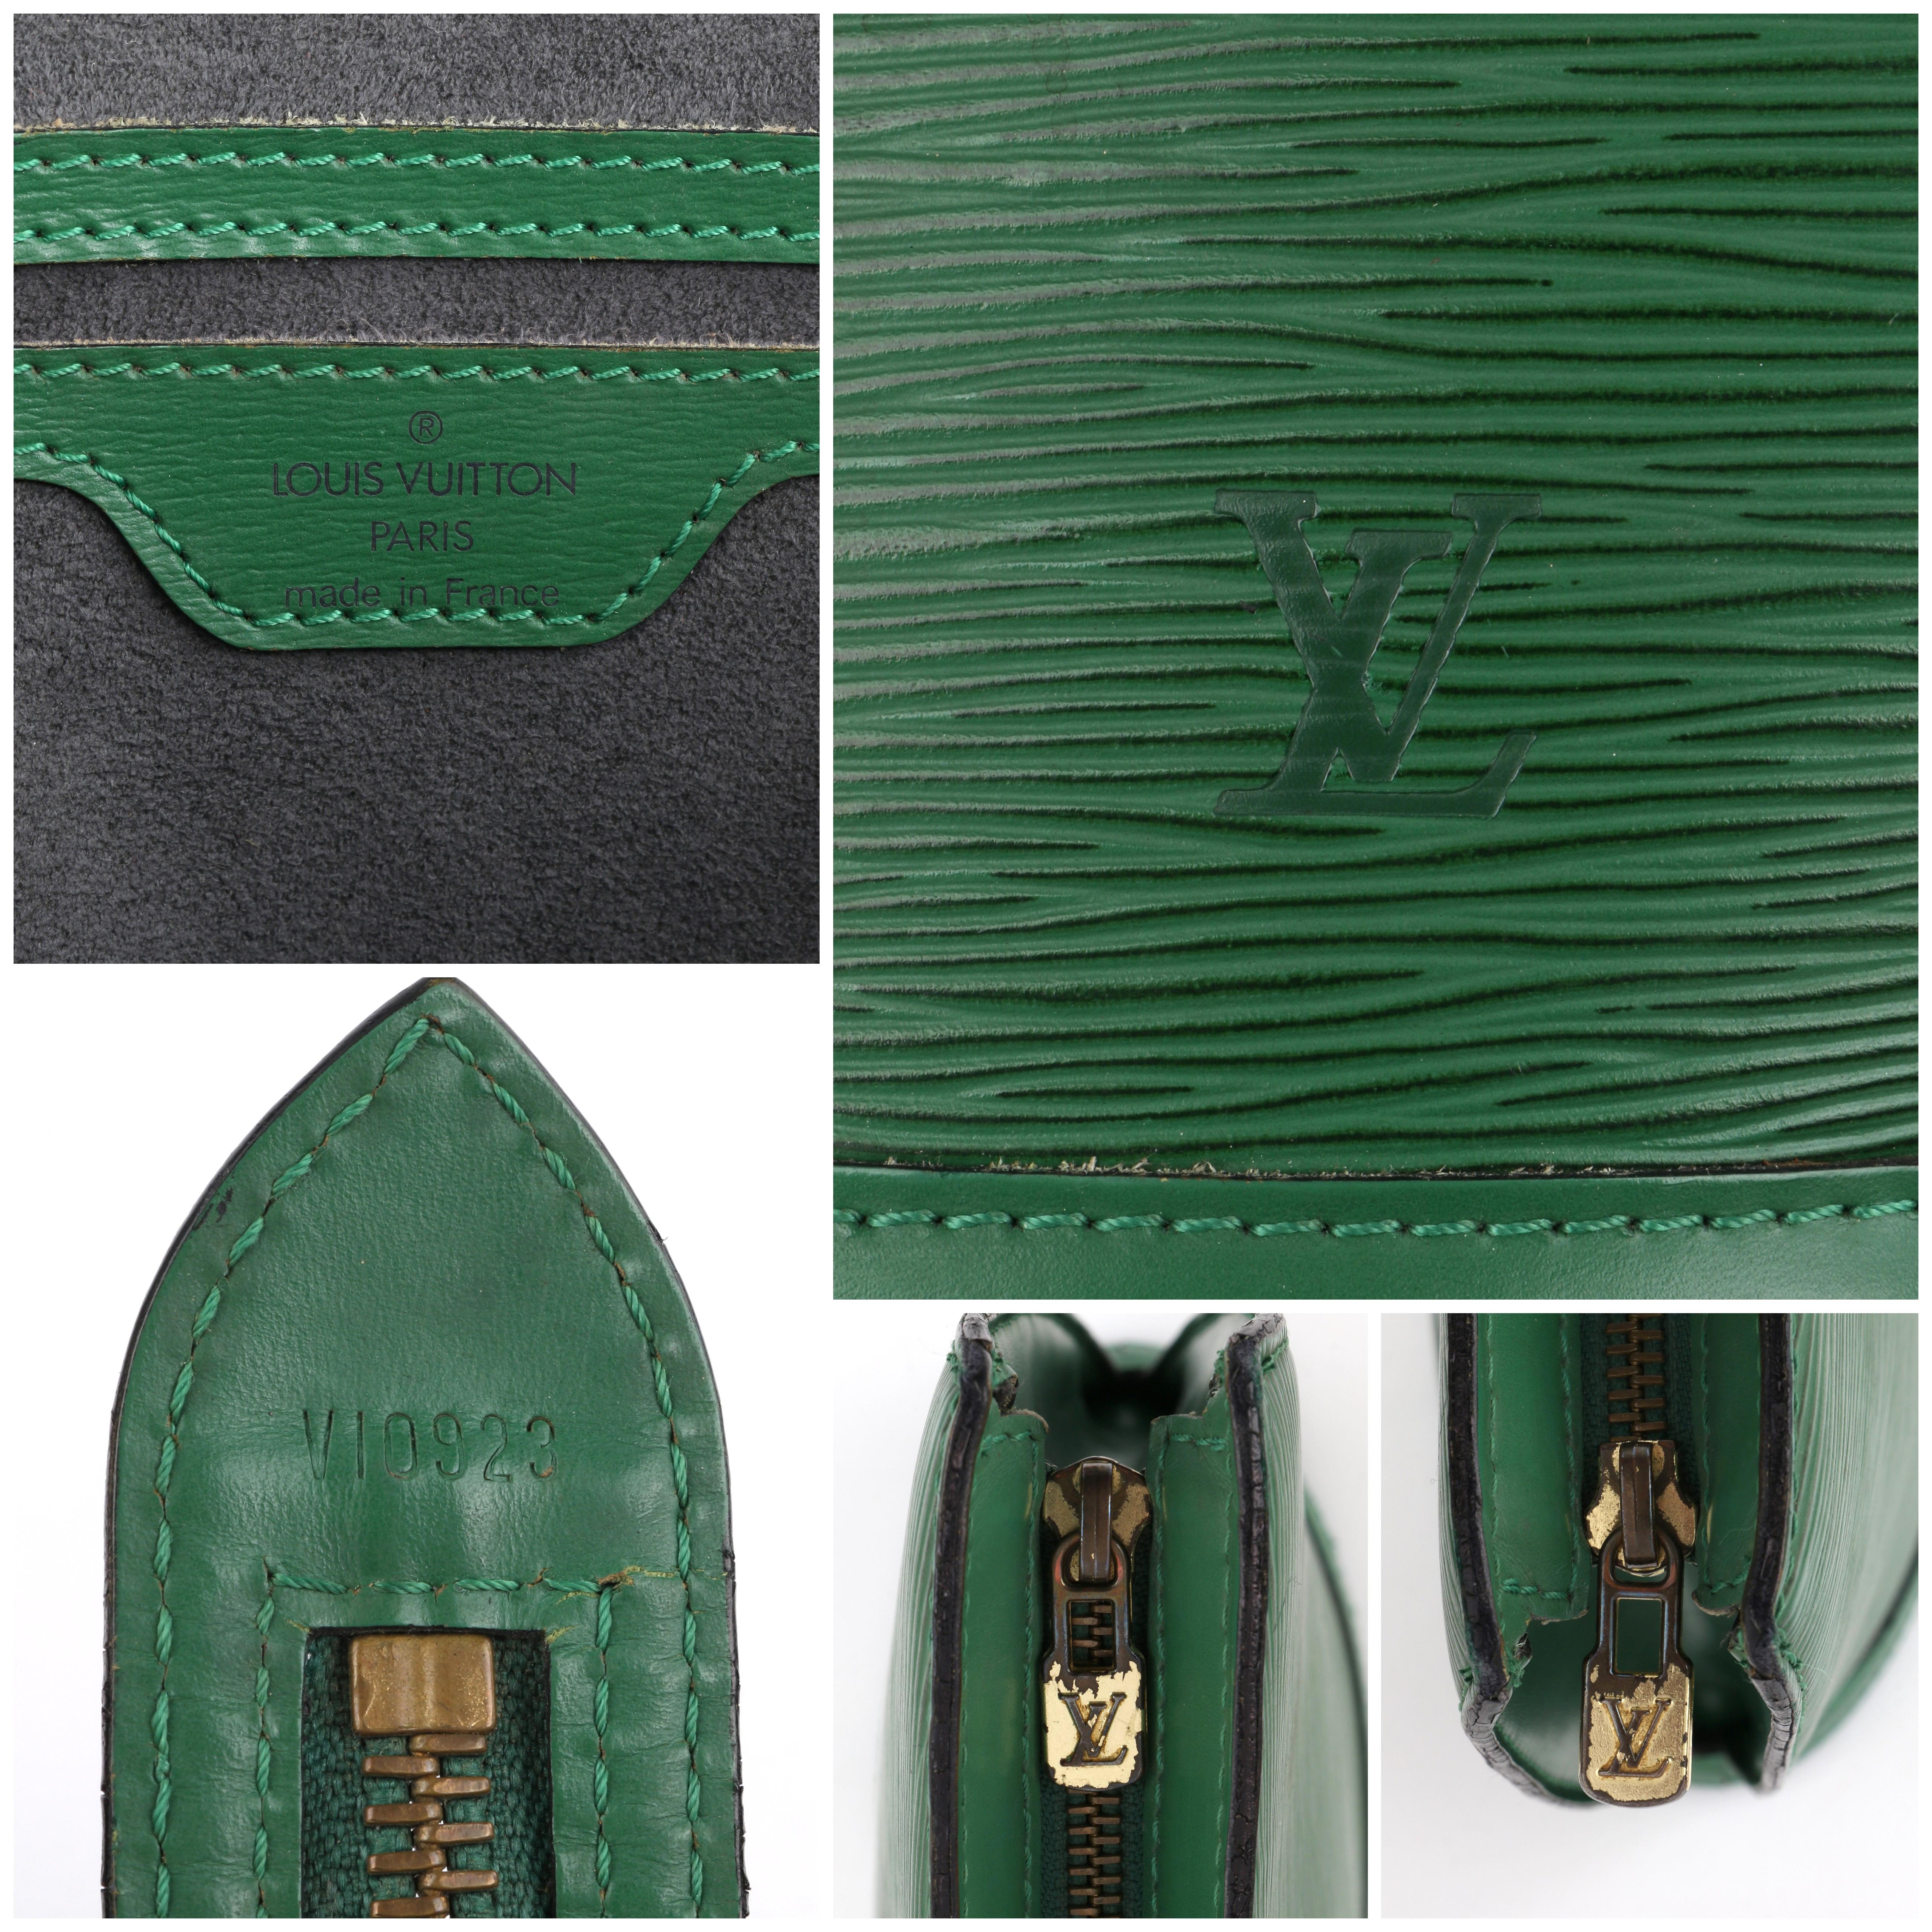 LOUIS VUITTON c.1993 “St. Jacques” Borneo Emerald Green Epi Leather Handbag  5